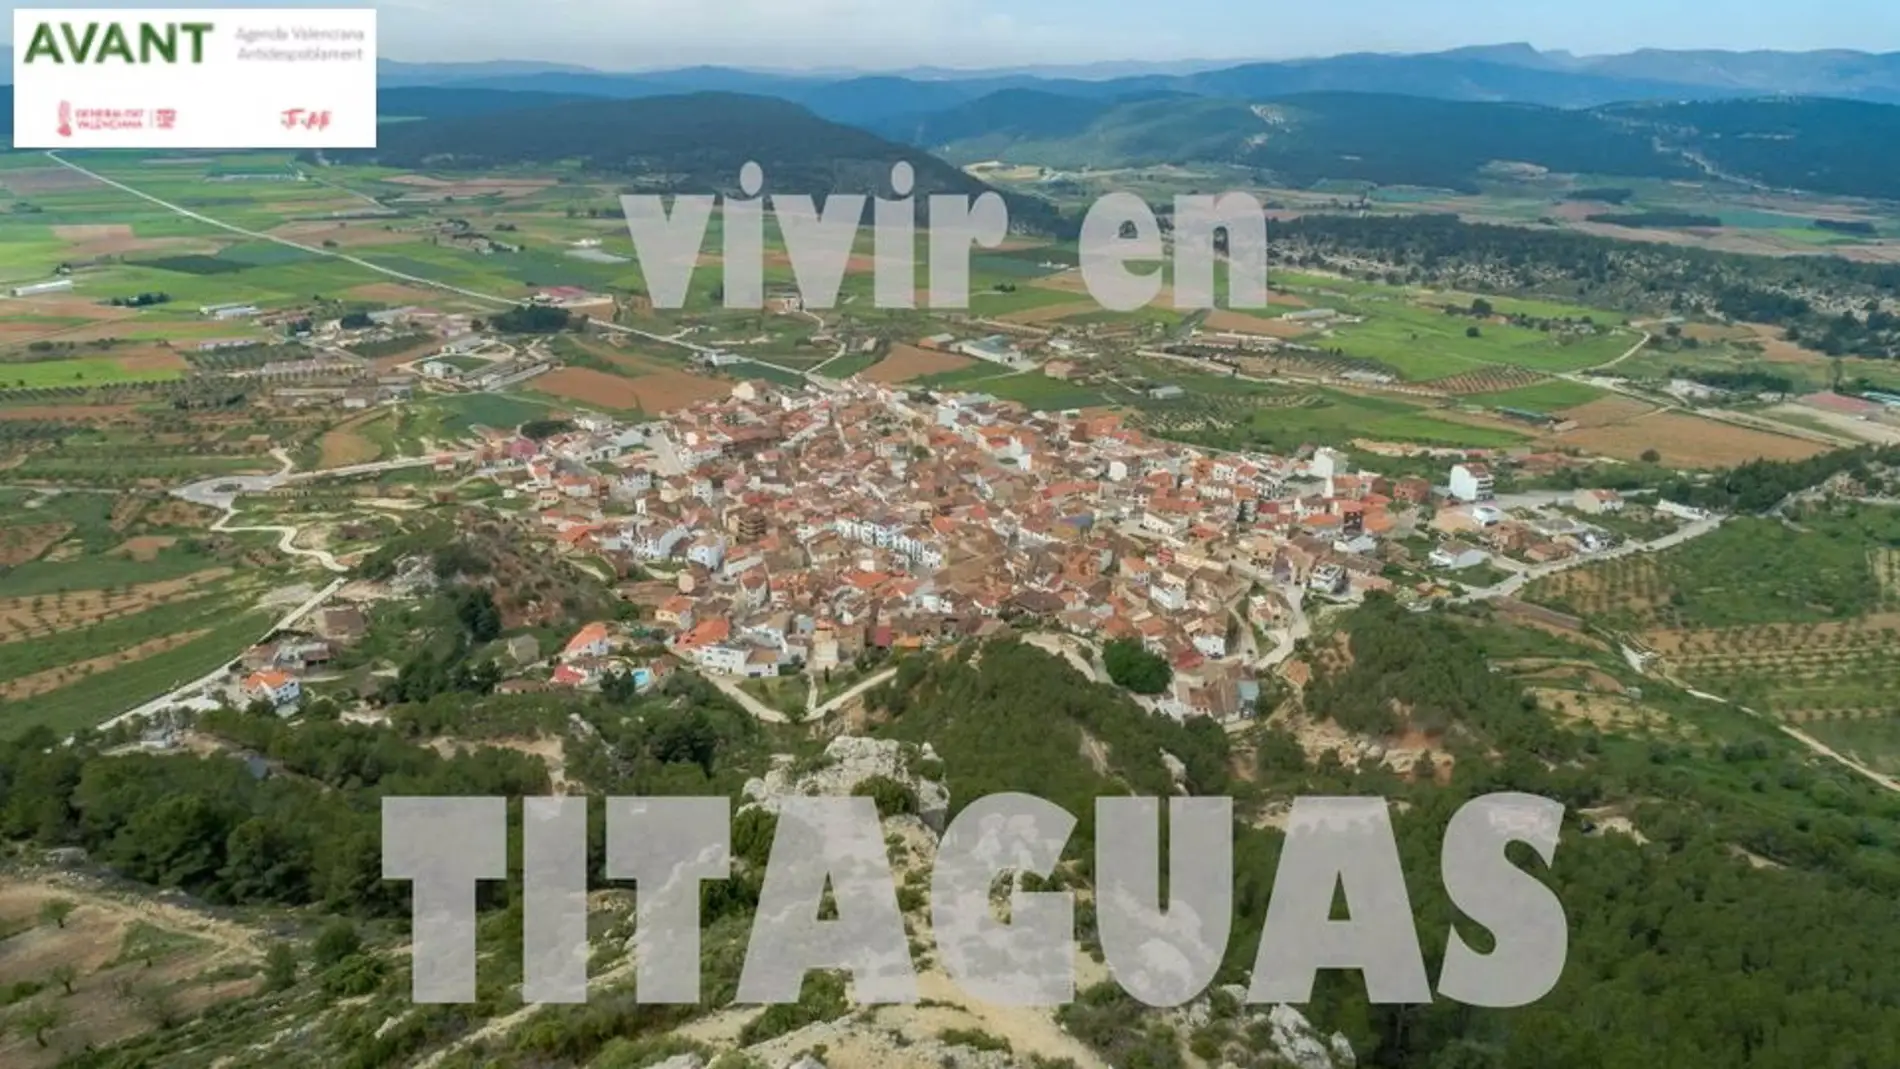 Titaguas lanza una campaña para captar residentes: "Vivir en pueblos pequeños es una oportunidad"